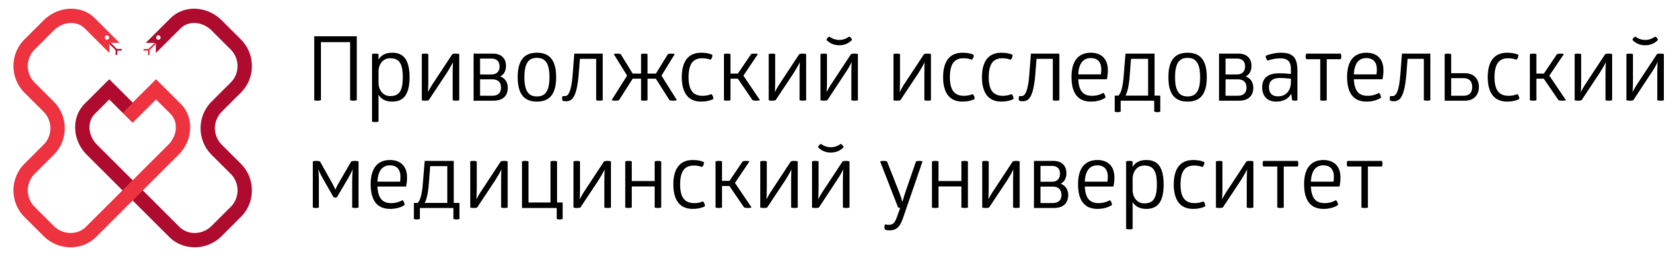 Пиму логотип на прозрачном фоне фото